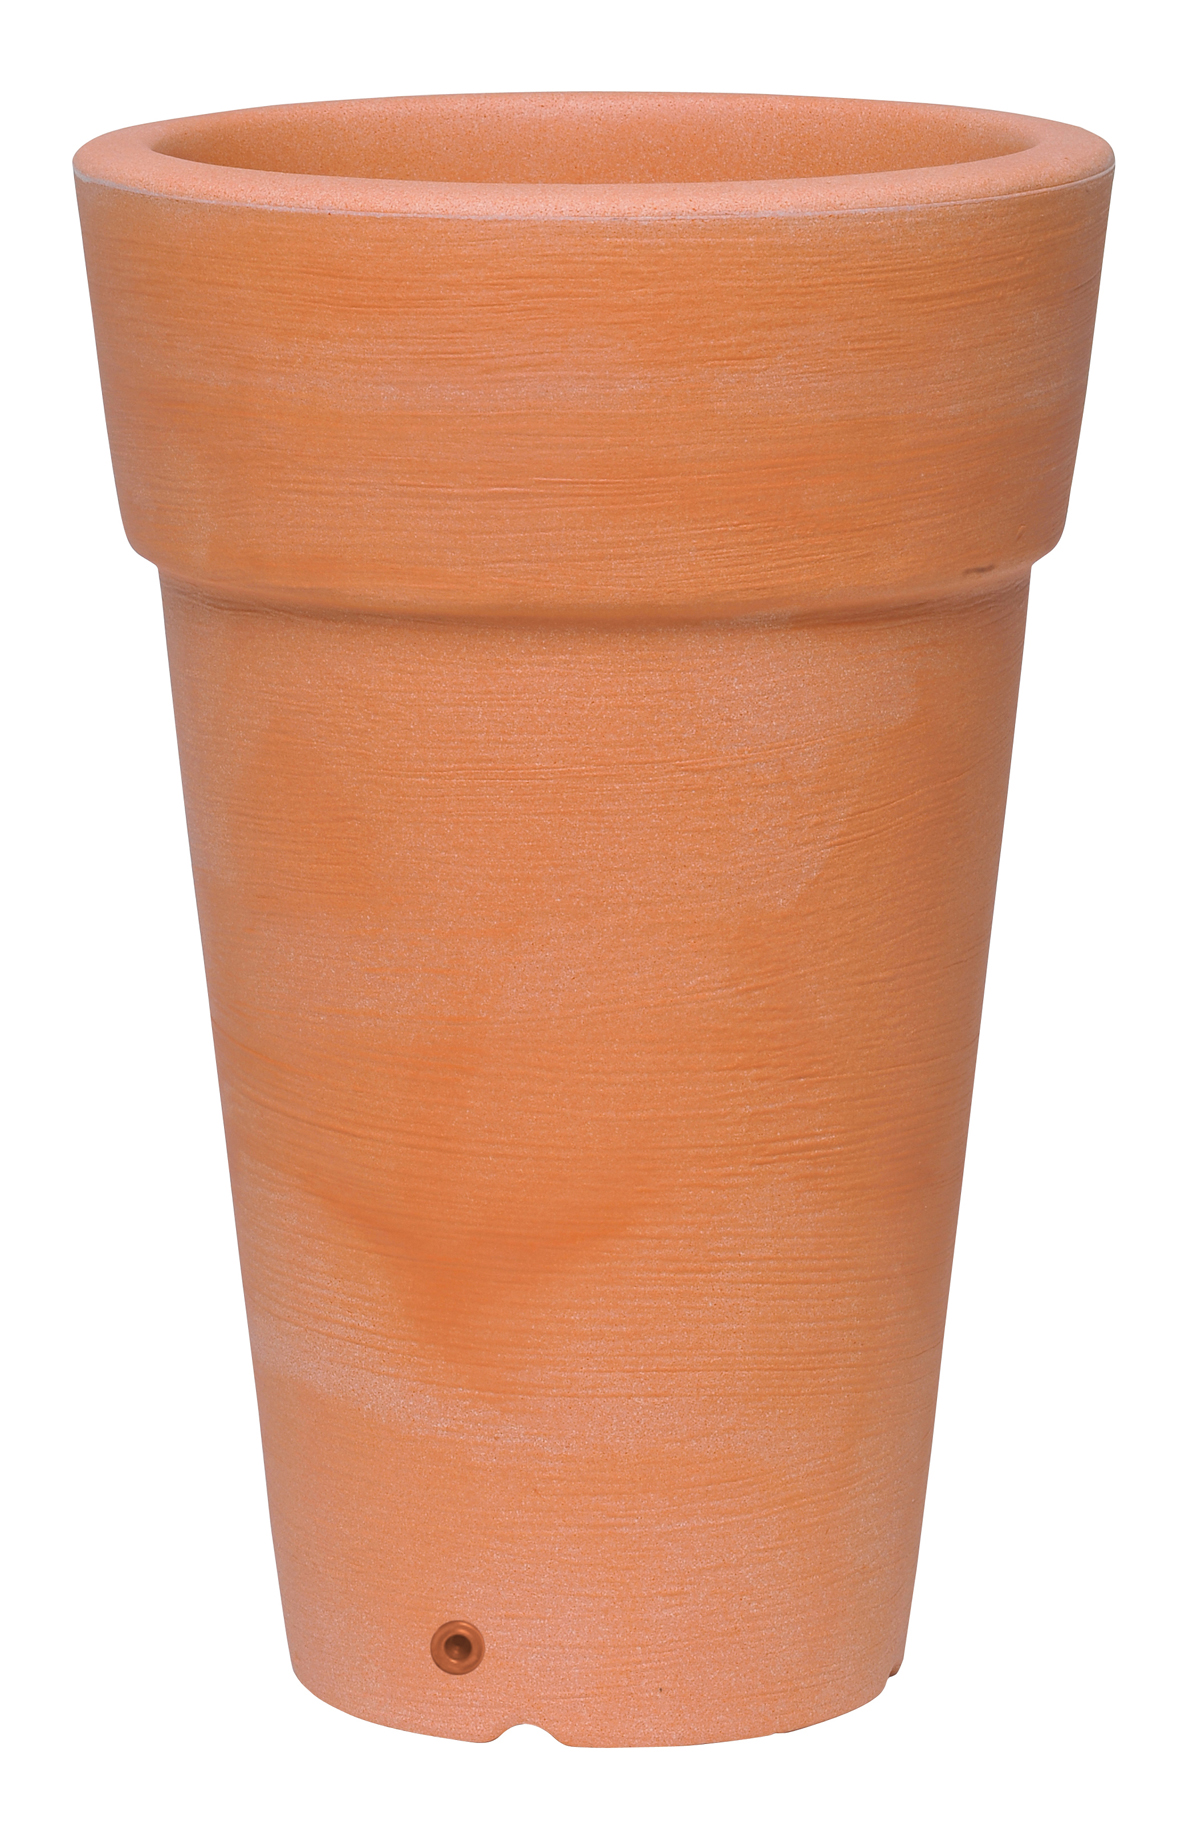 Pot rond haut plastique coloris terre cuite - Poterie/Pots de